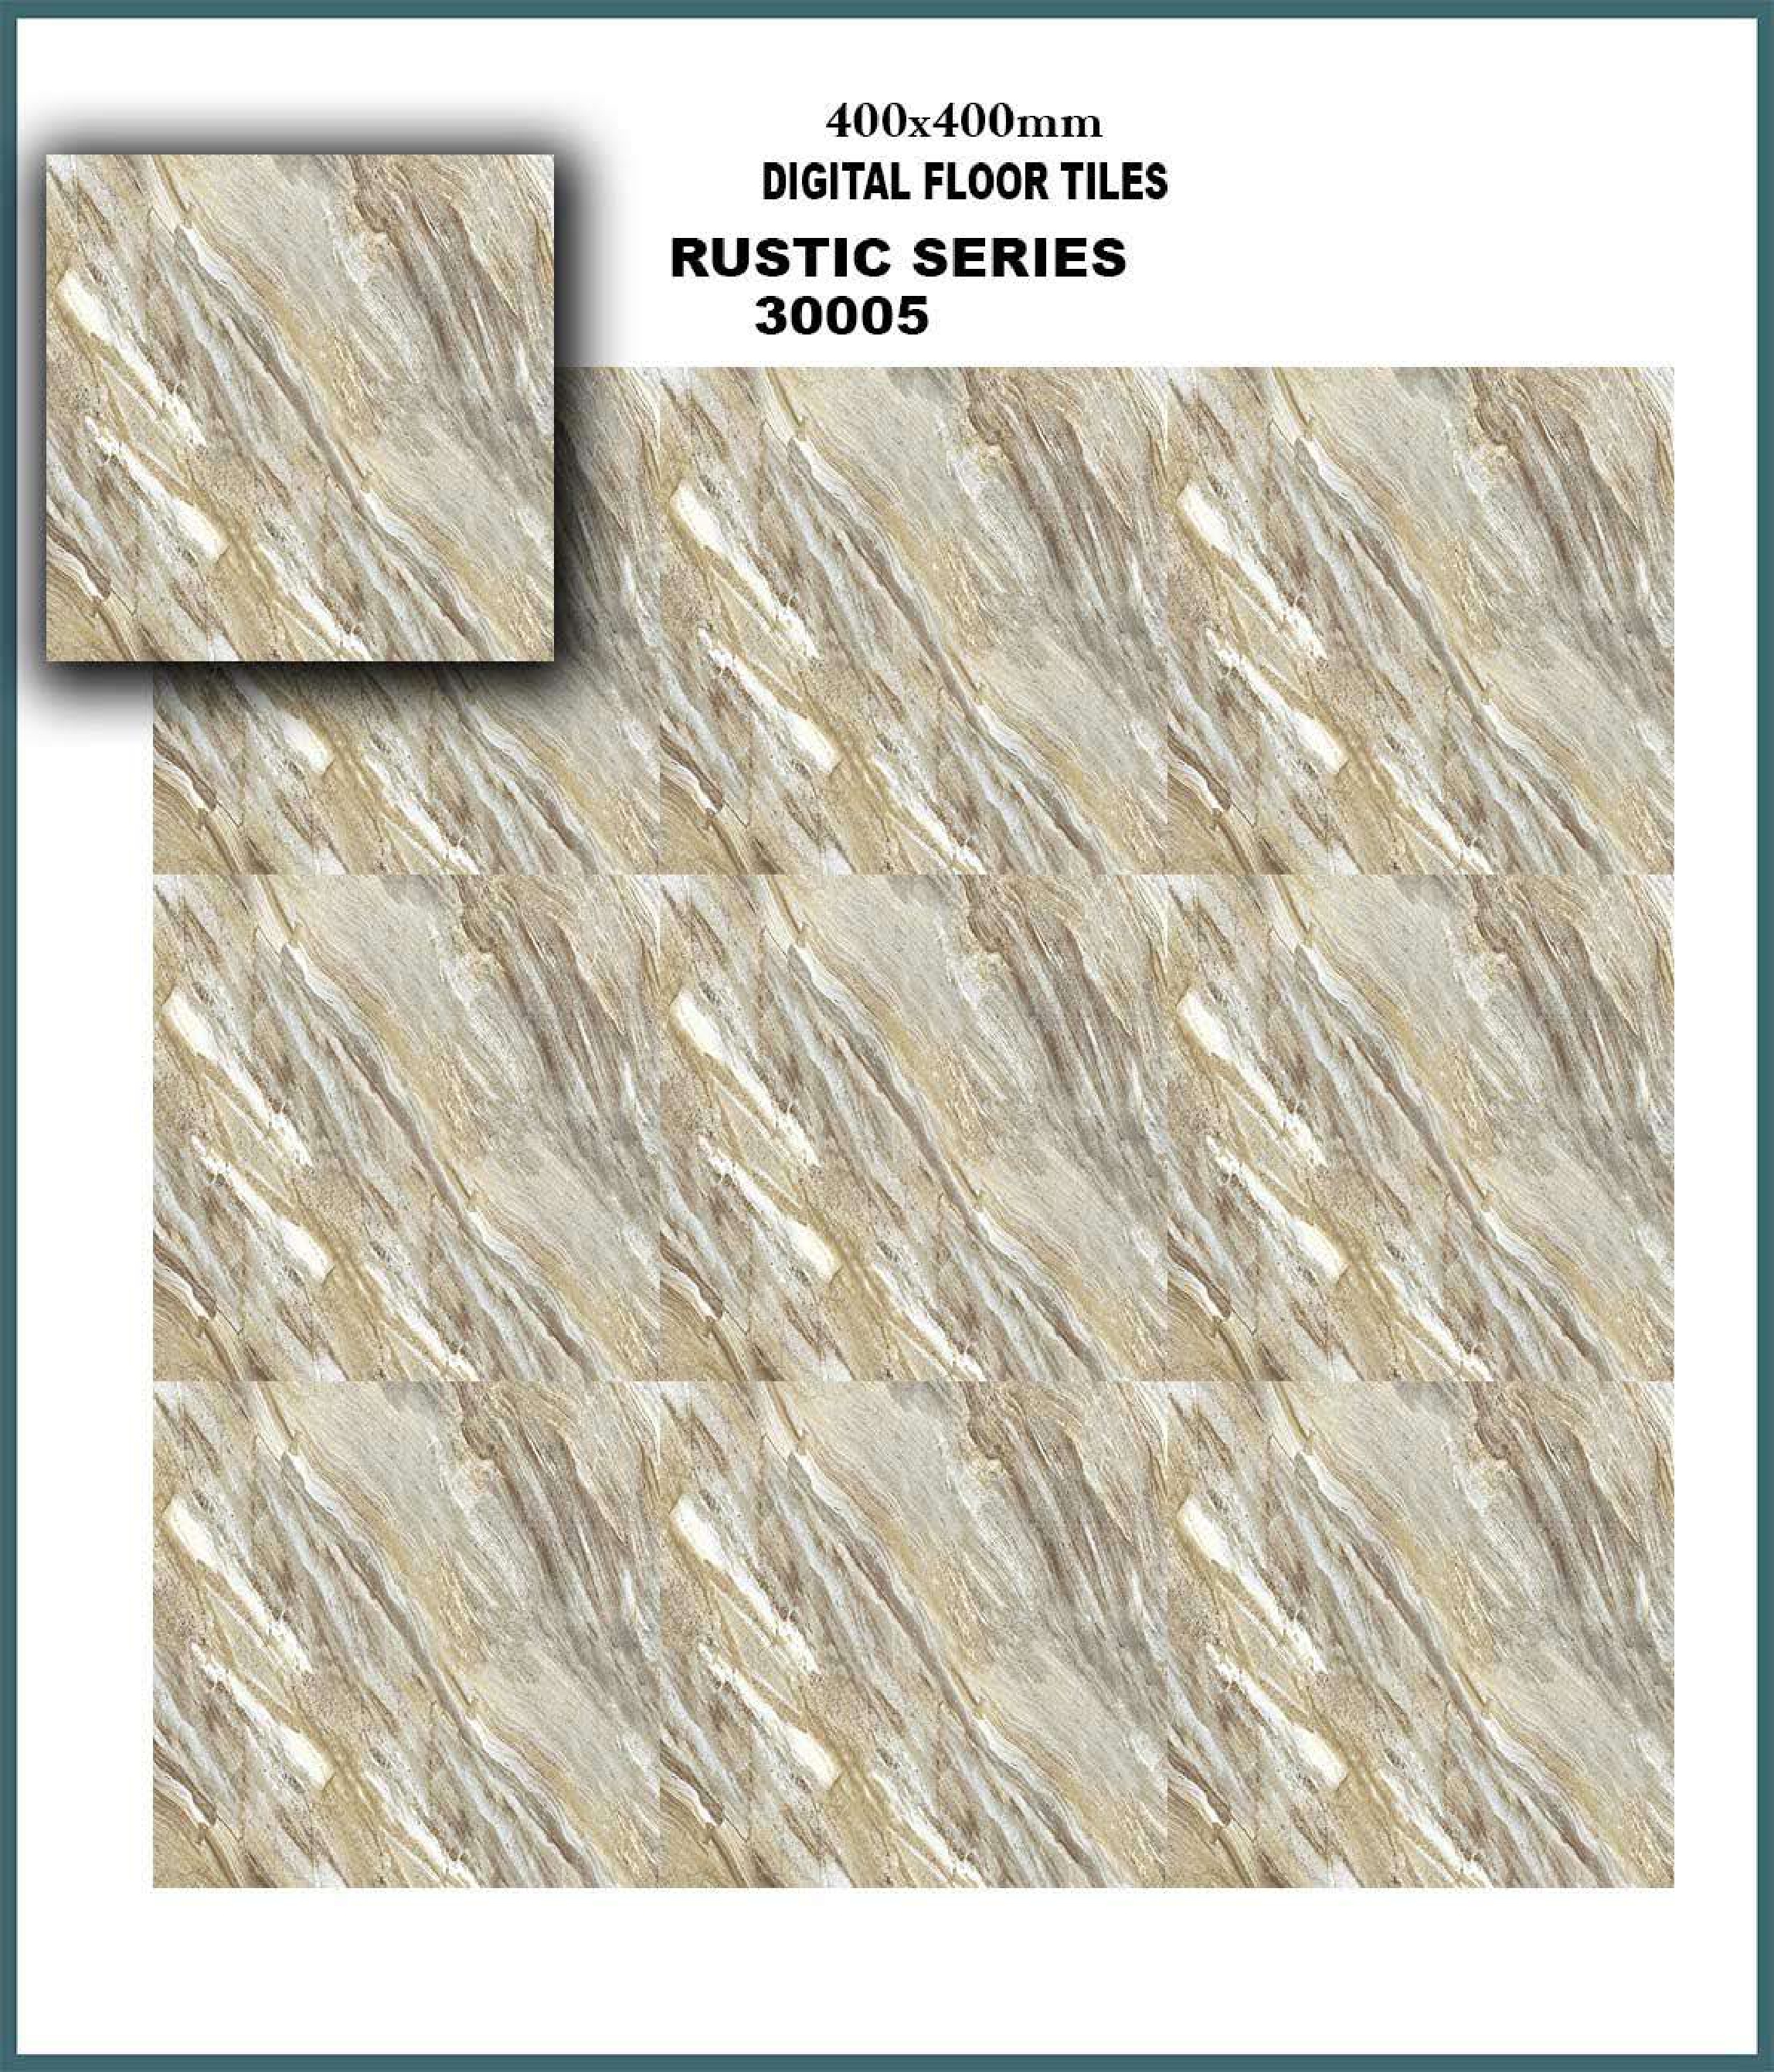 Digital Floor Tiles - Rustic Series